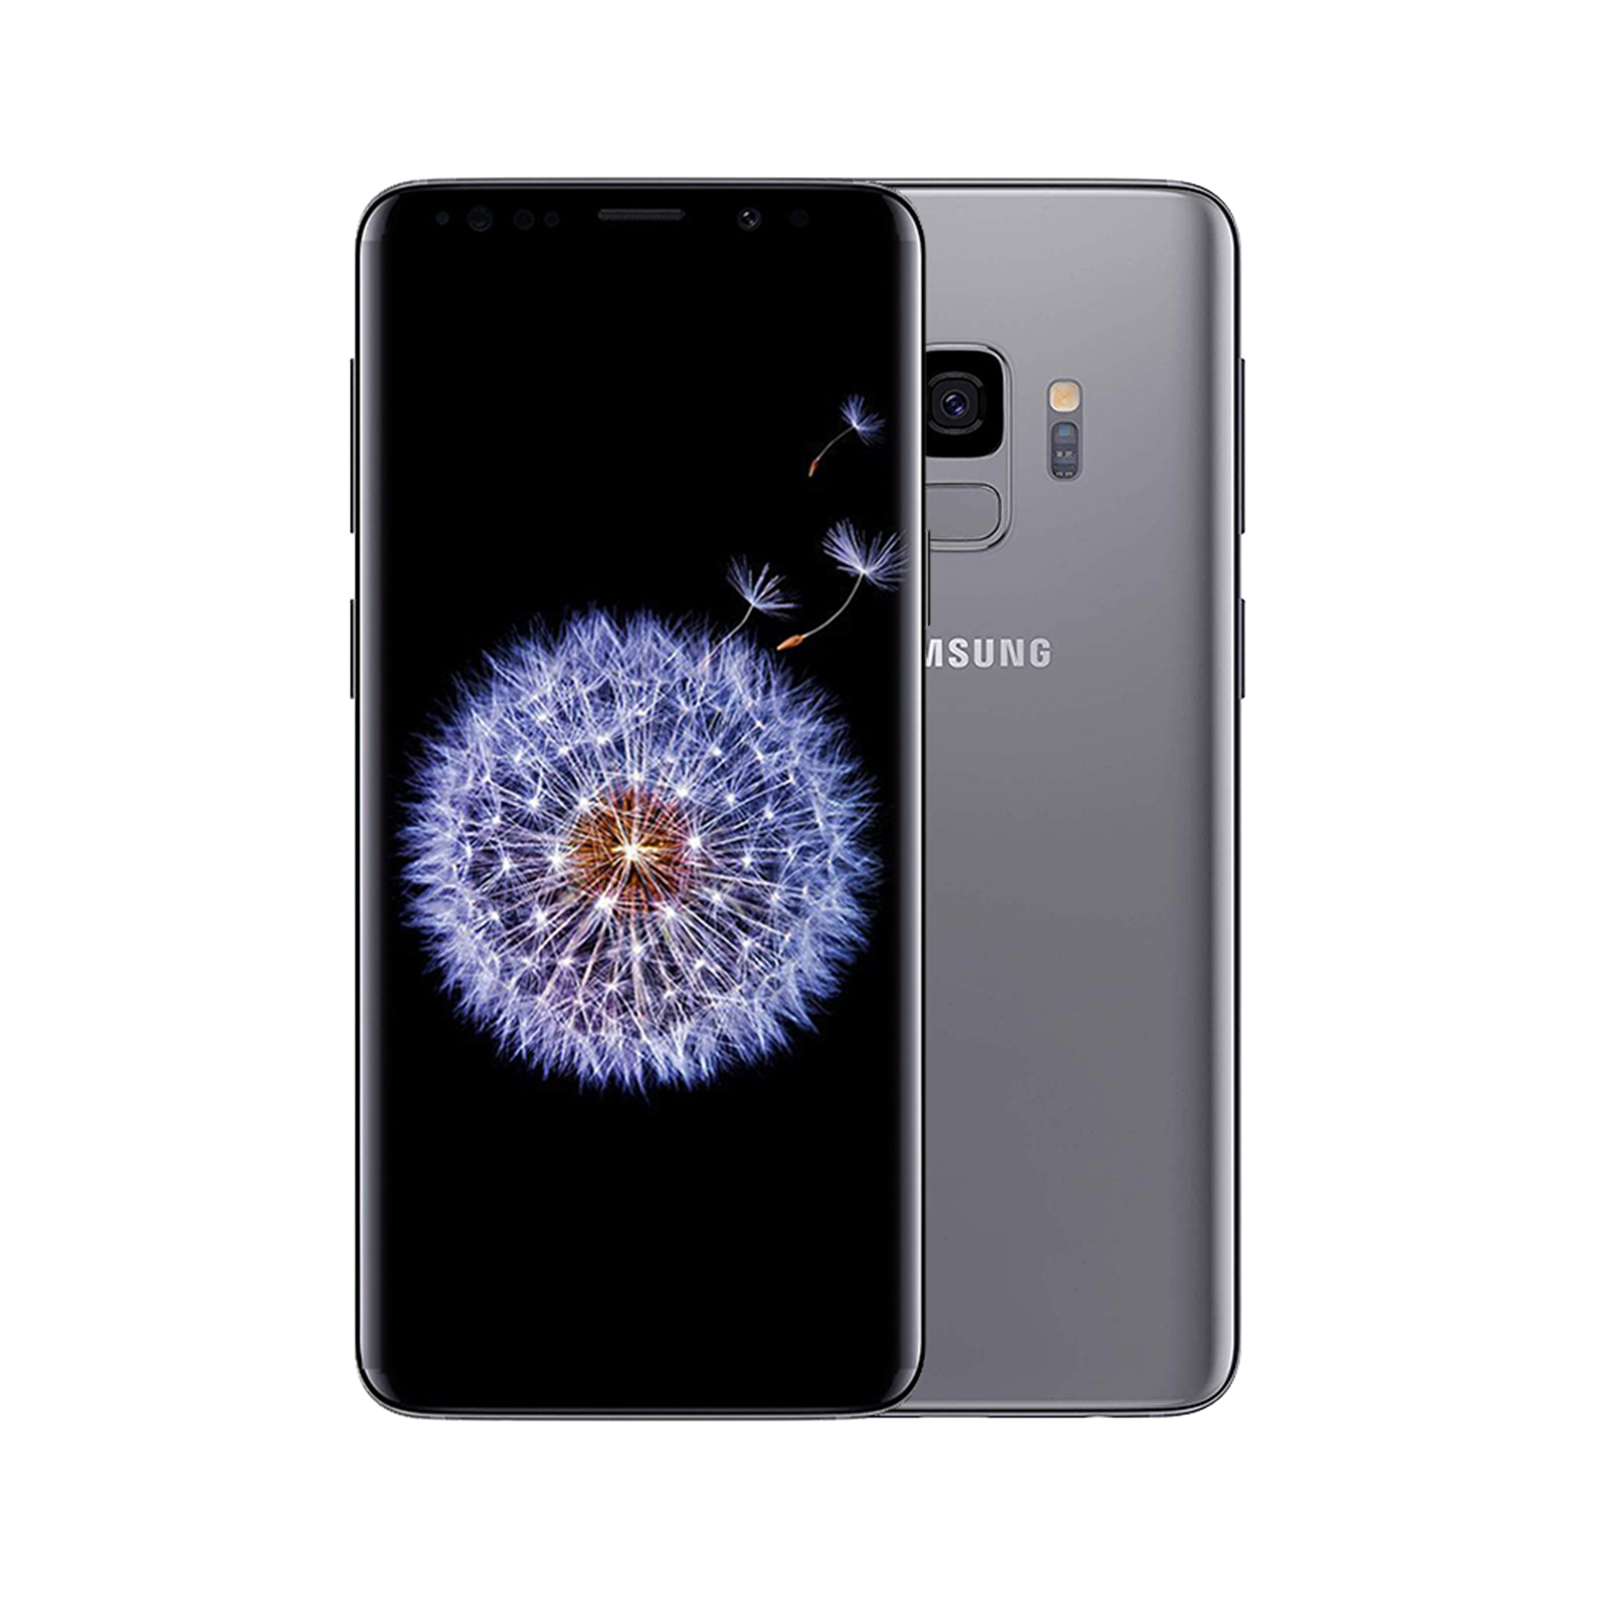 Samsung Galaxy S9 64GB Titanium Grey [Very Good]